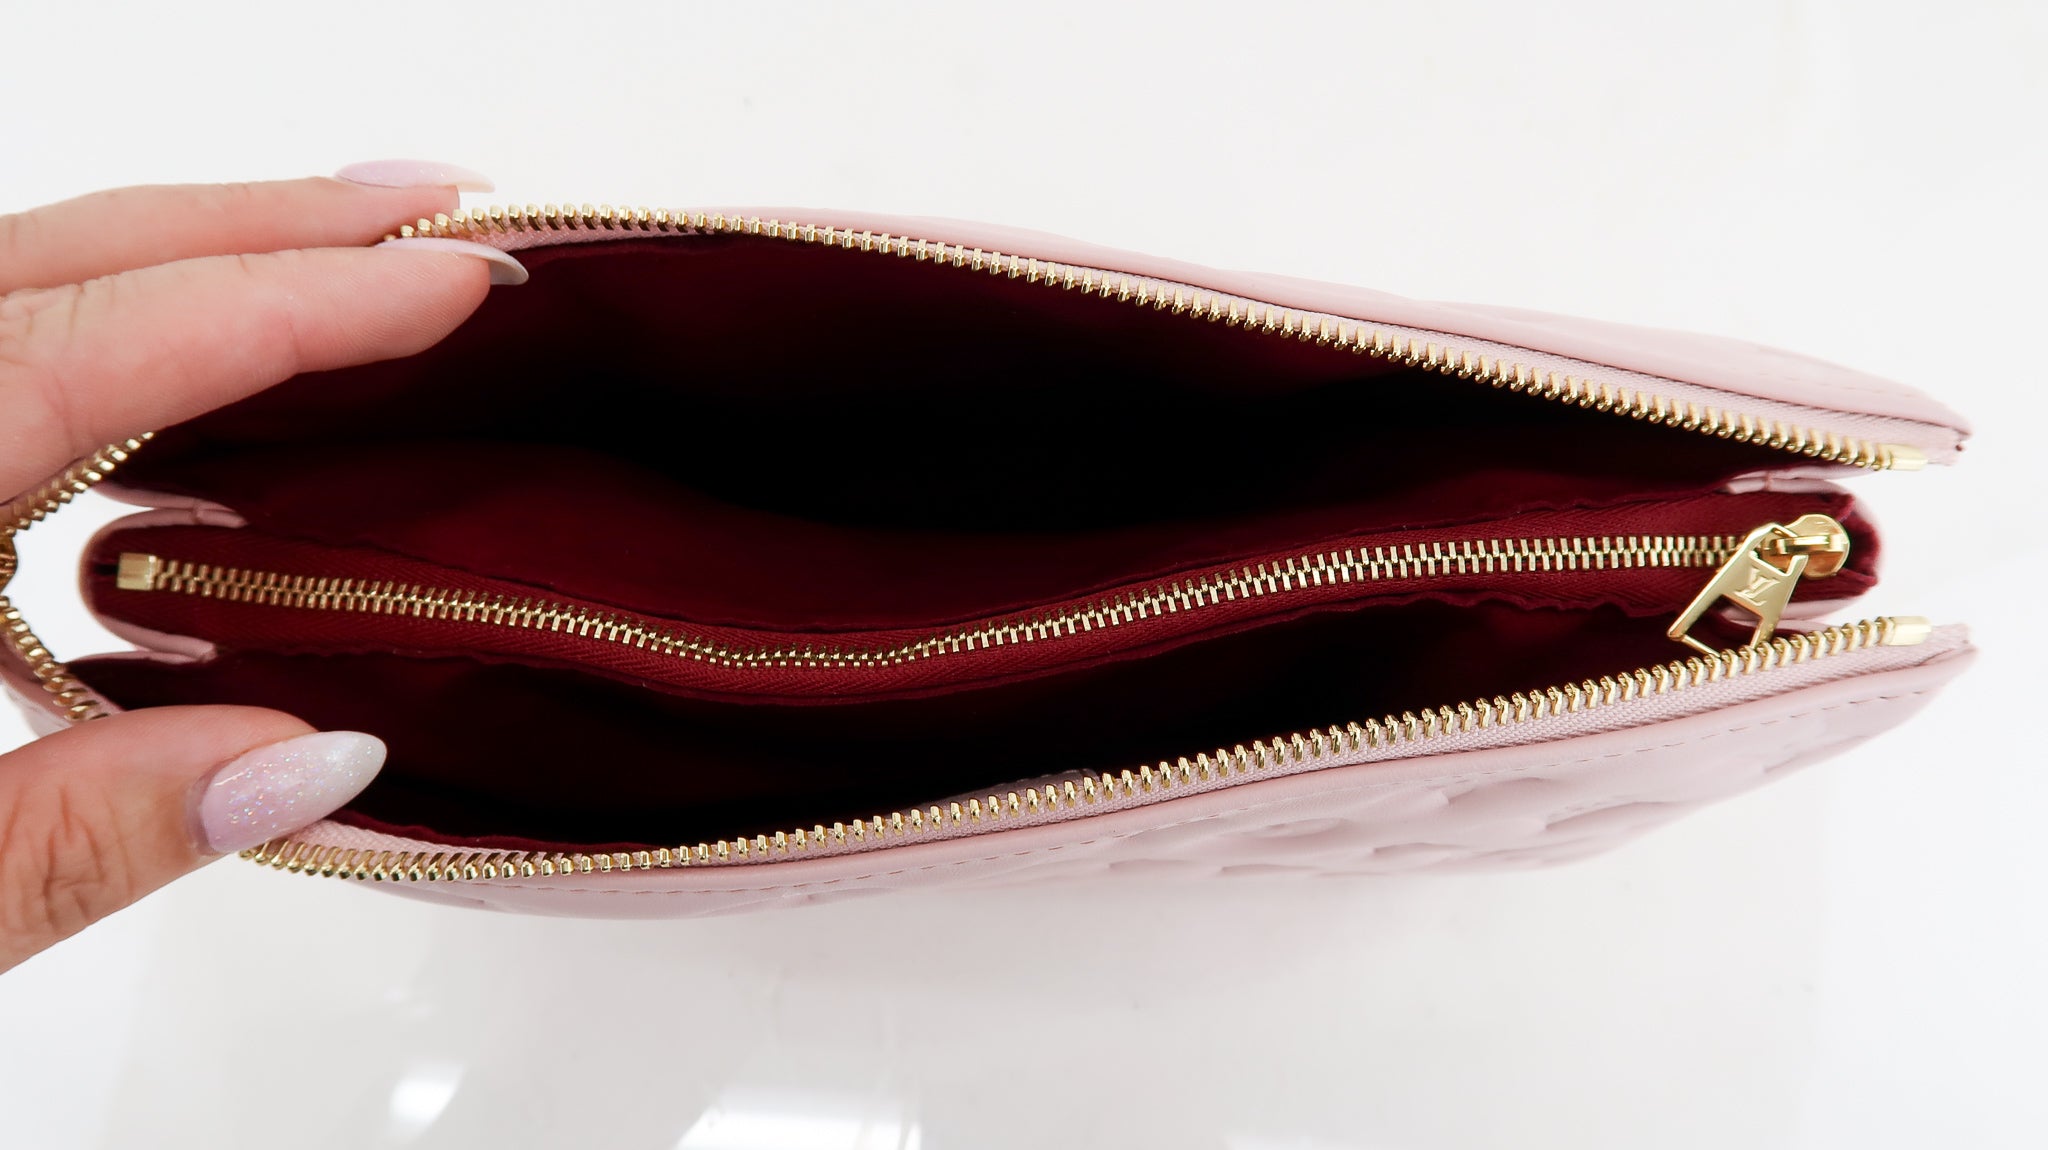 Louis Vuitton LV Coussin PM Pink Leather ref.371737 - Joli Closet